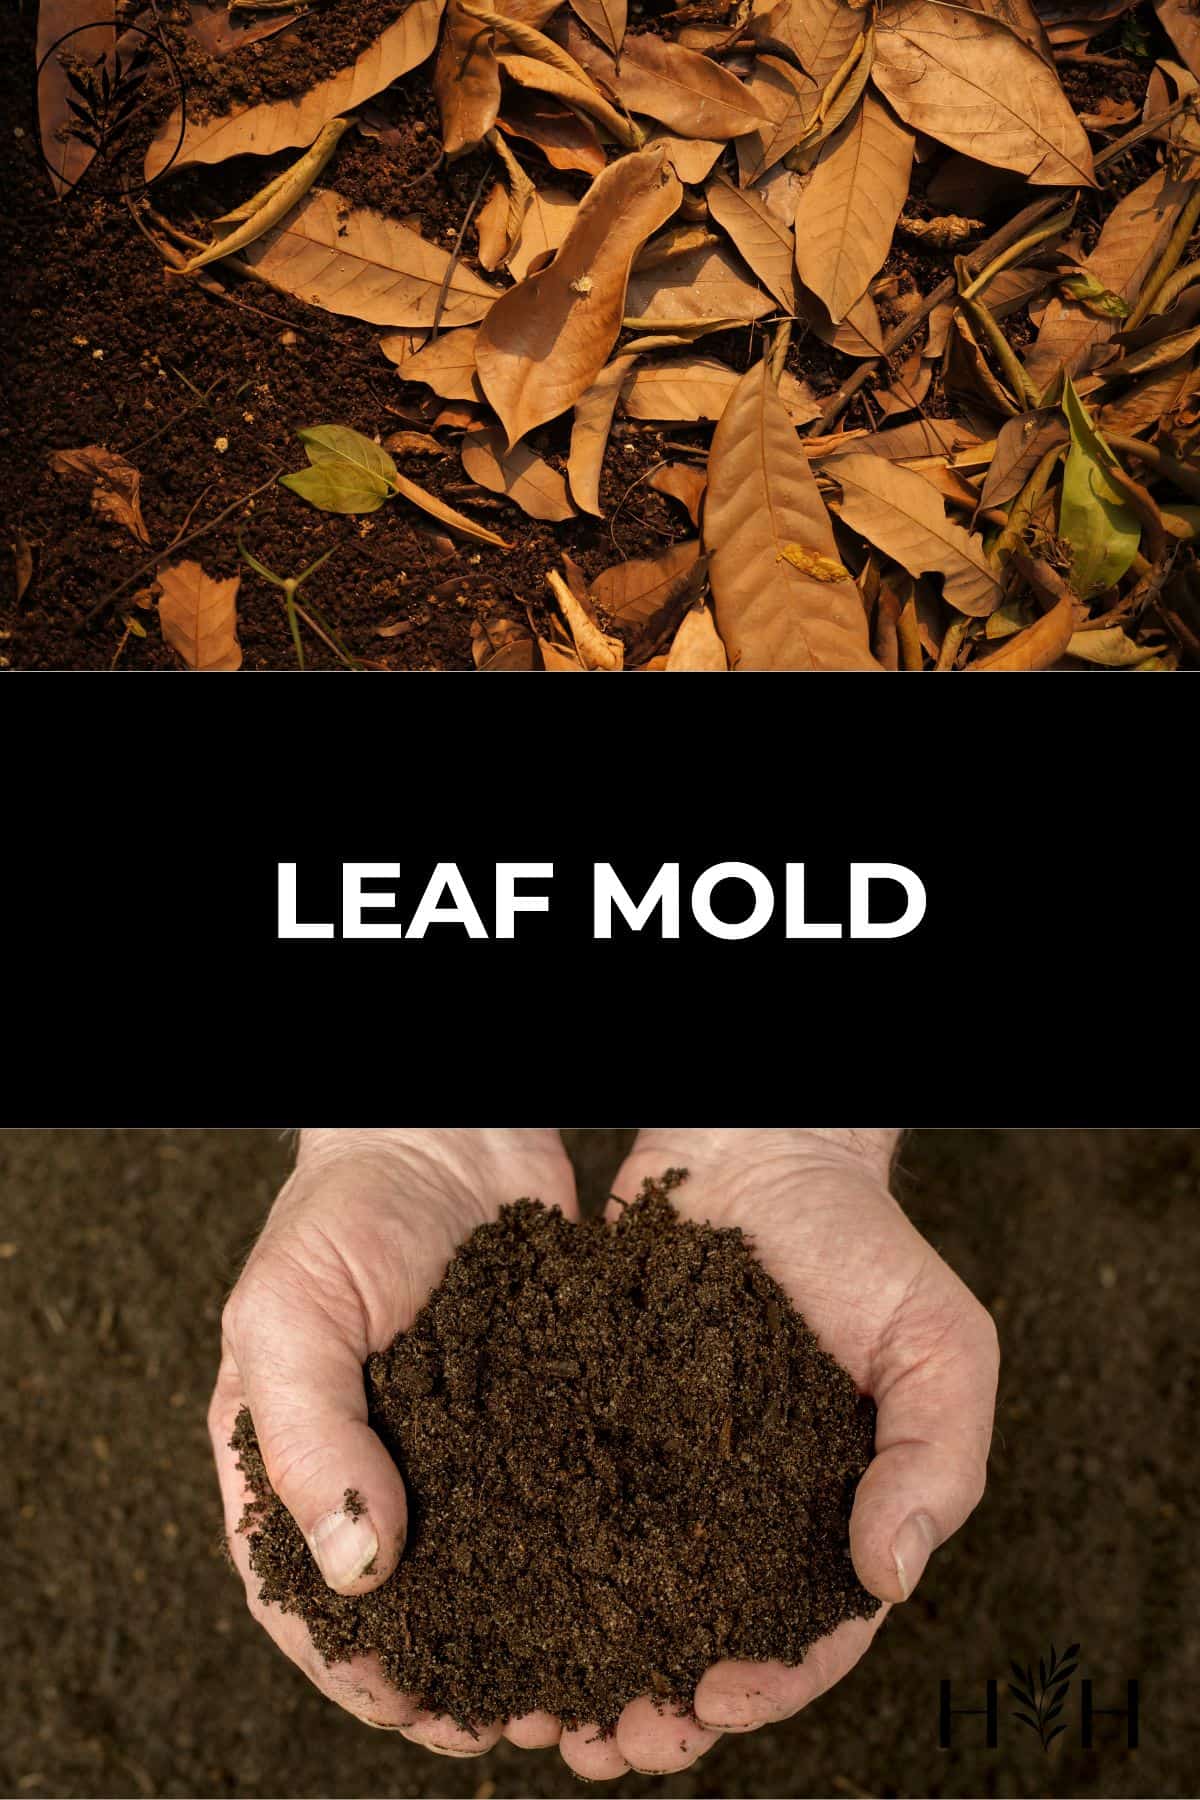 Leaf mold via @home4theharvest